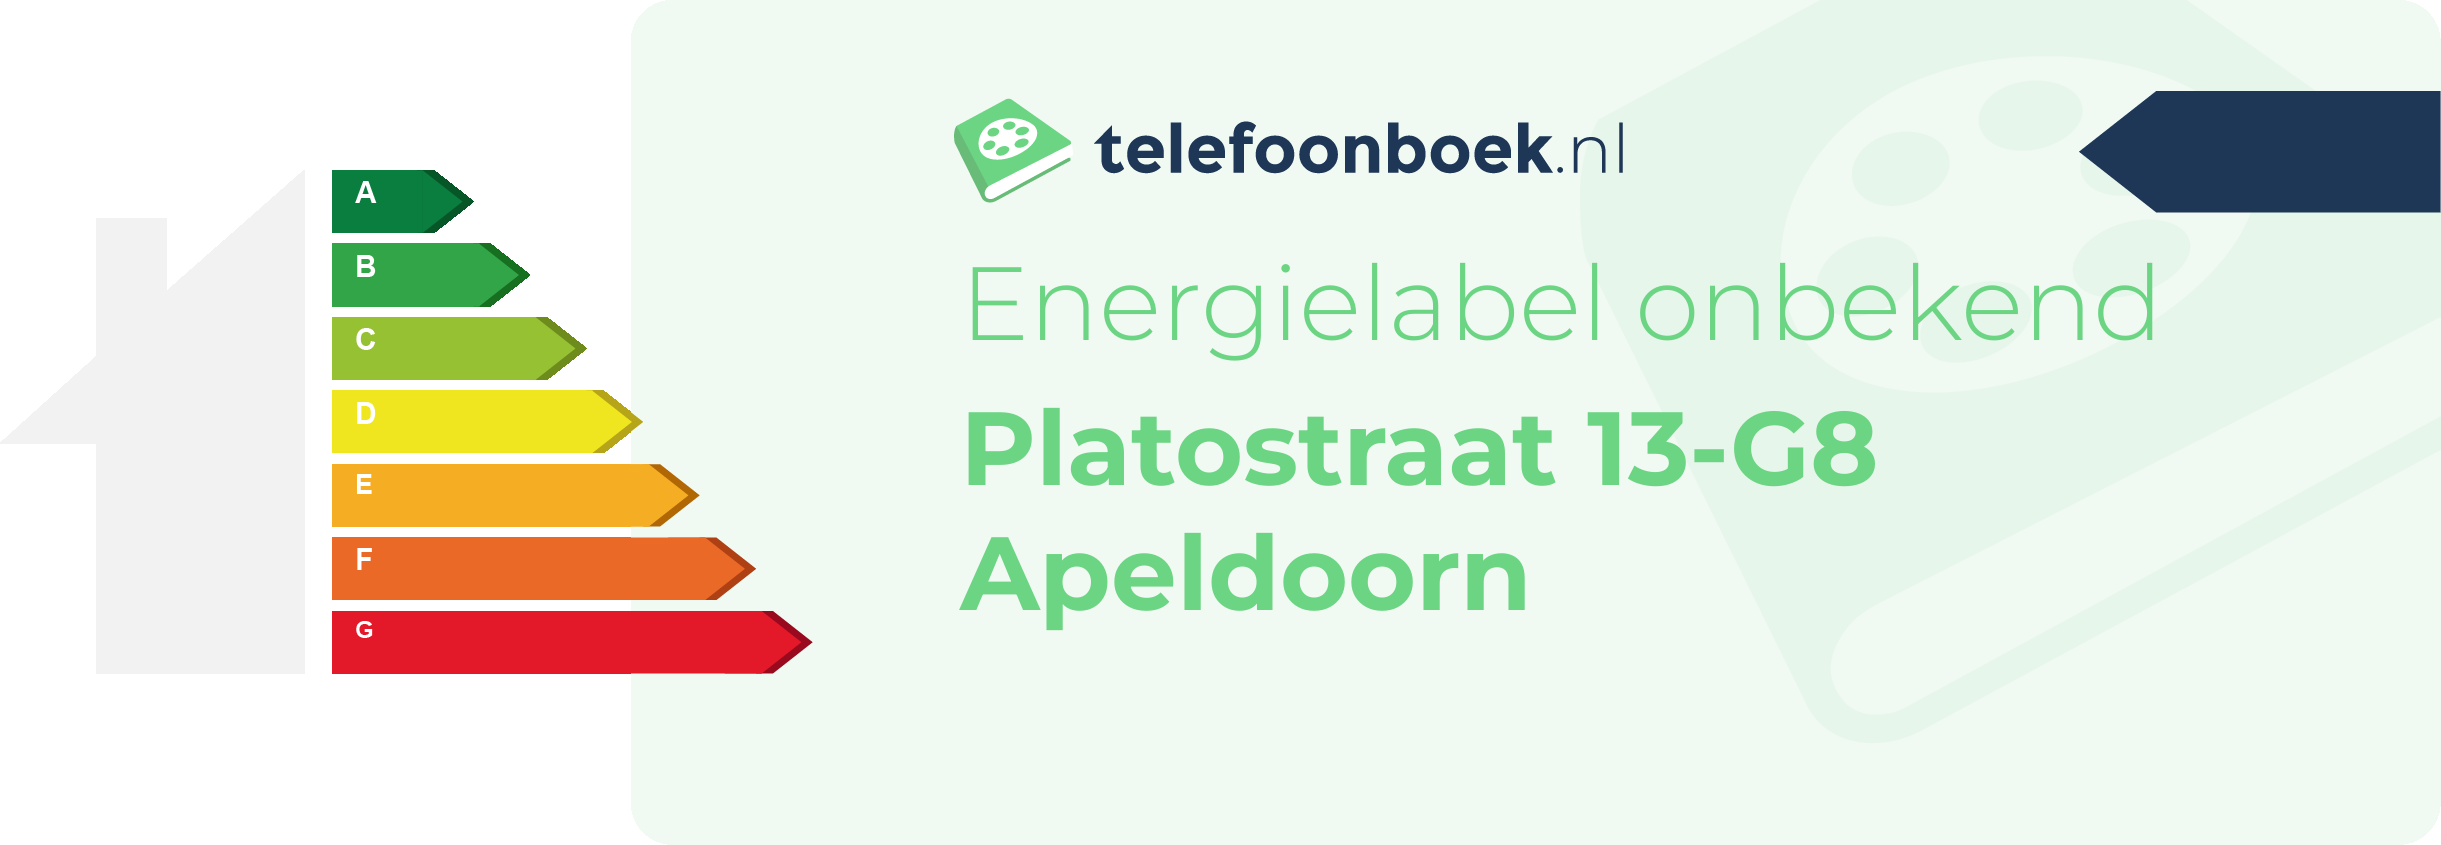 Energielabel Platostraat 13-G8 Apeldoorn